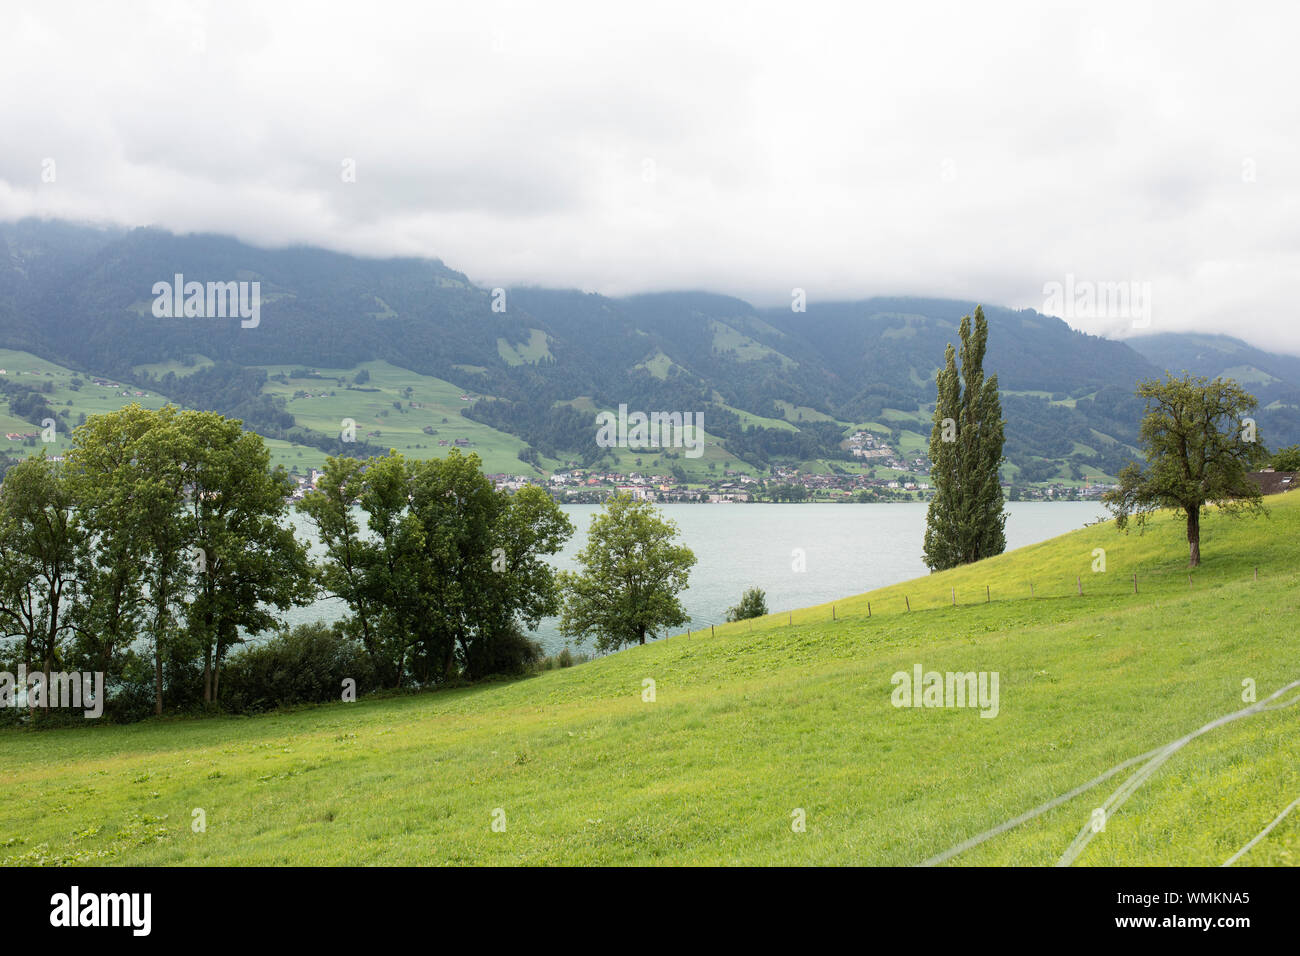 Una vista della città di Sachseln dall'altra parte del lago Sarnen, nel cantone di Obvaldo, in Svizzera. Foto Stock